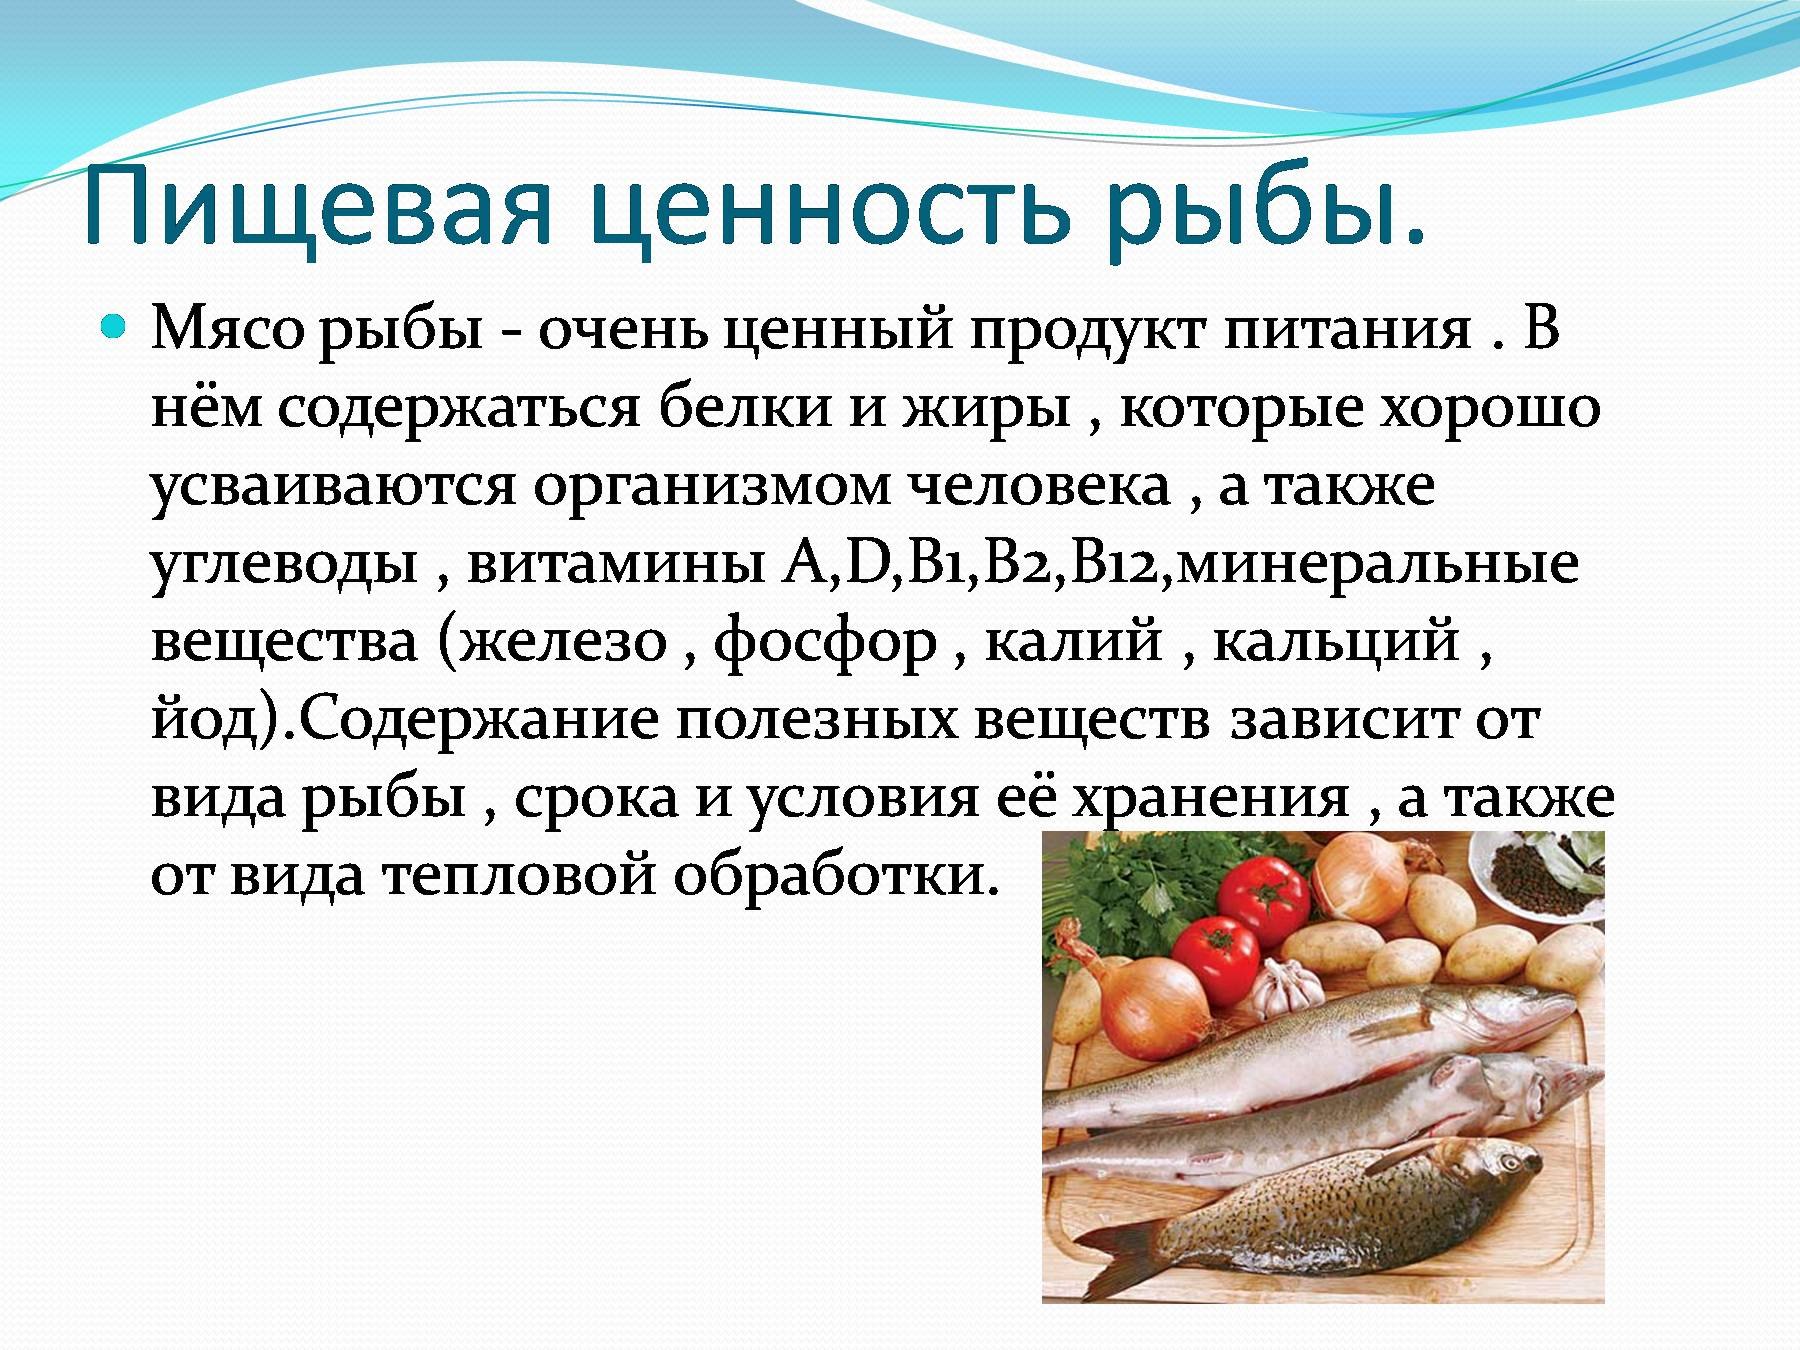 Треска какие жиры. Пищевая ценность рыбы. Пищевая и биологическая ценность рыбы. Ценность рыбы в питании человека. Пищевая ценность мяса рыбы.